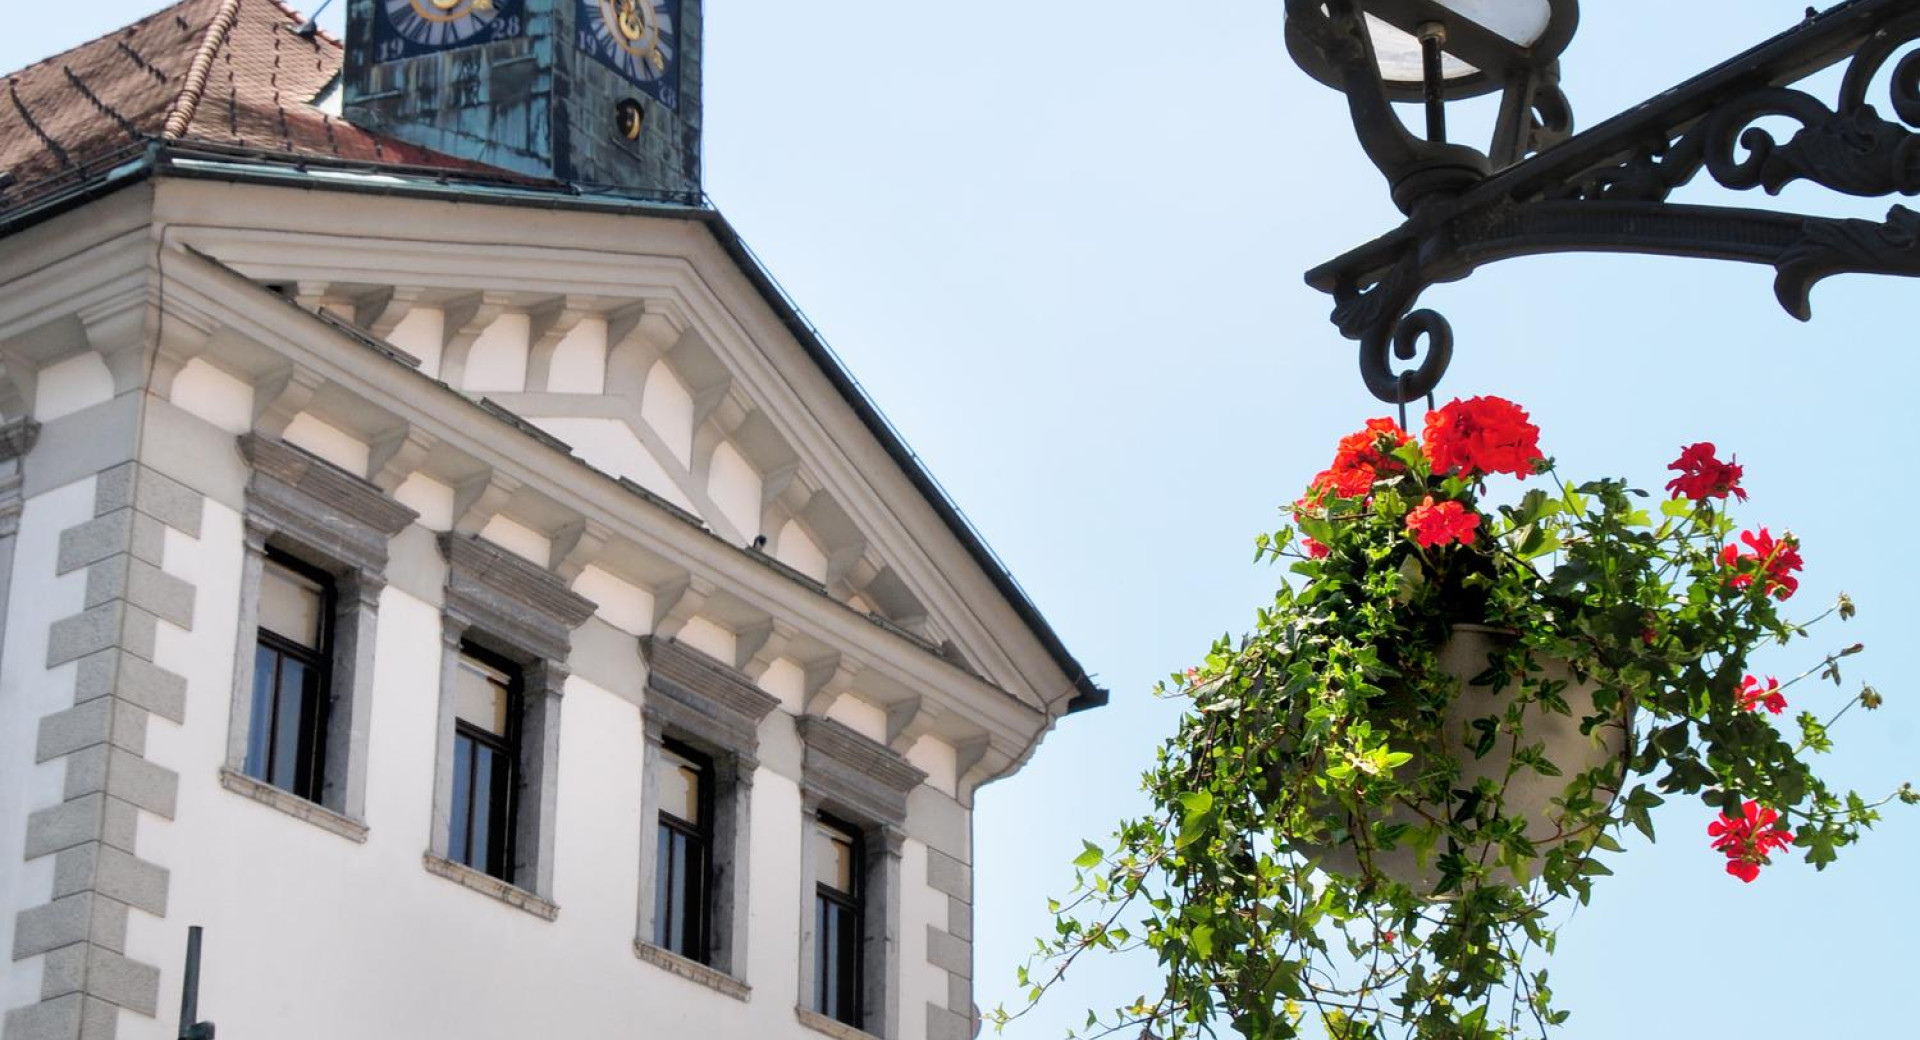 Cvetlične obešanke v starem mestnem jedru Ljubljane